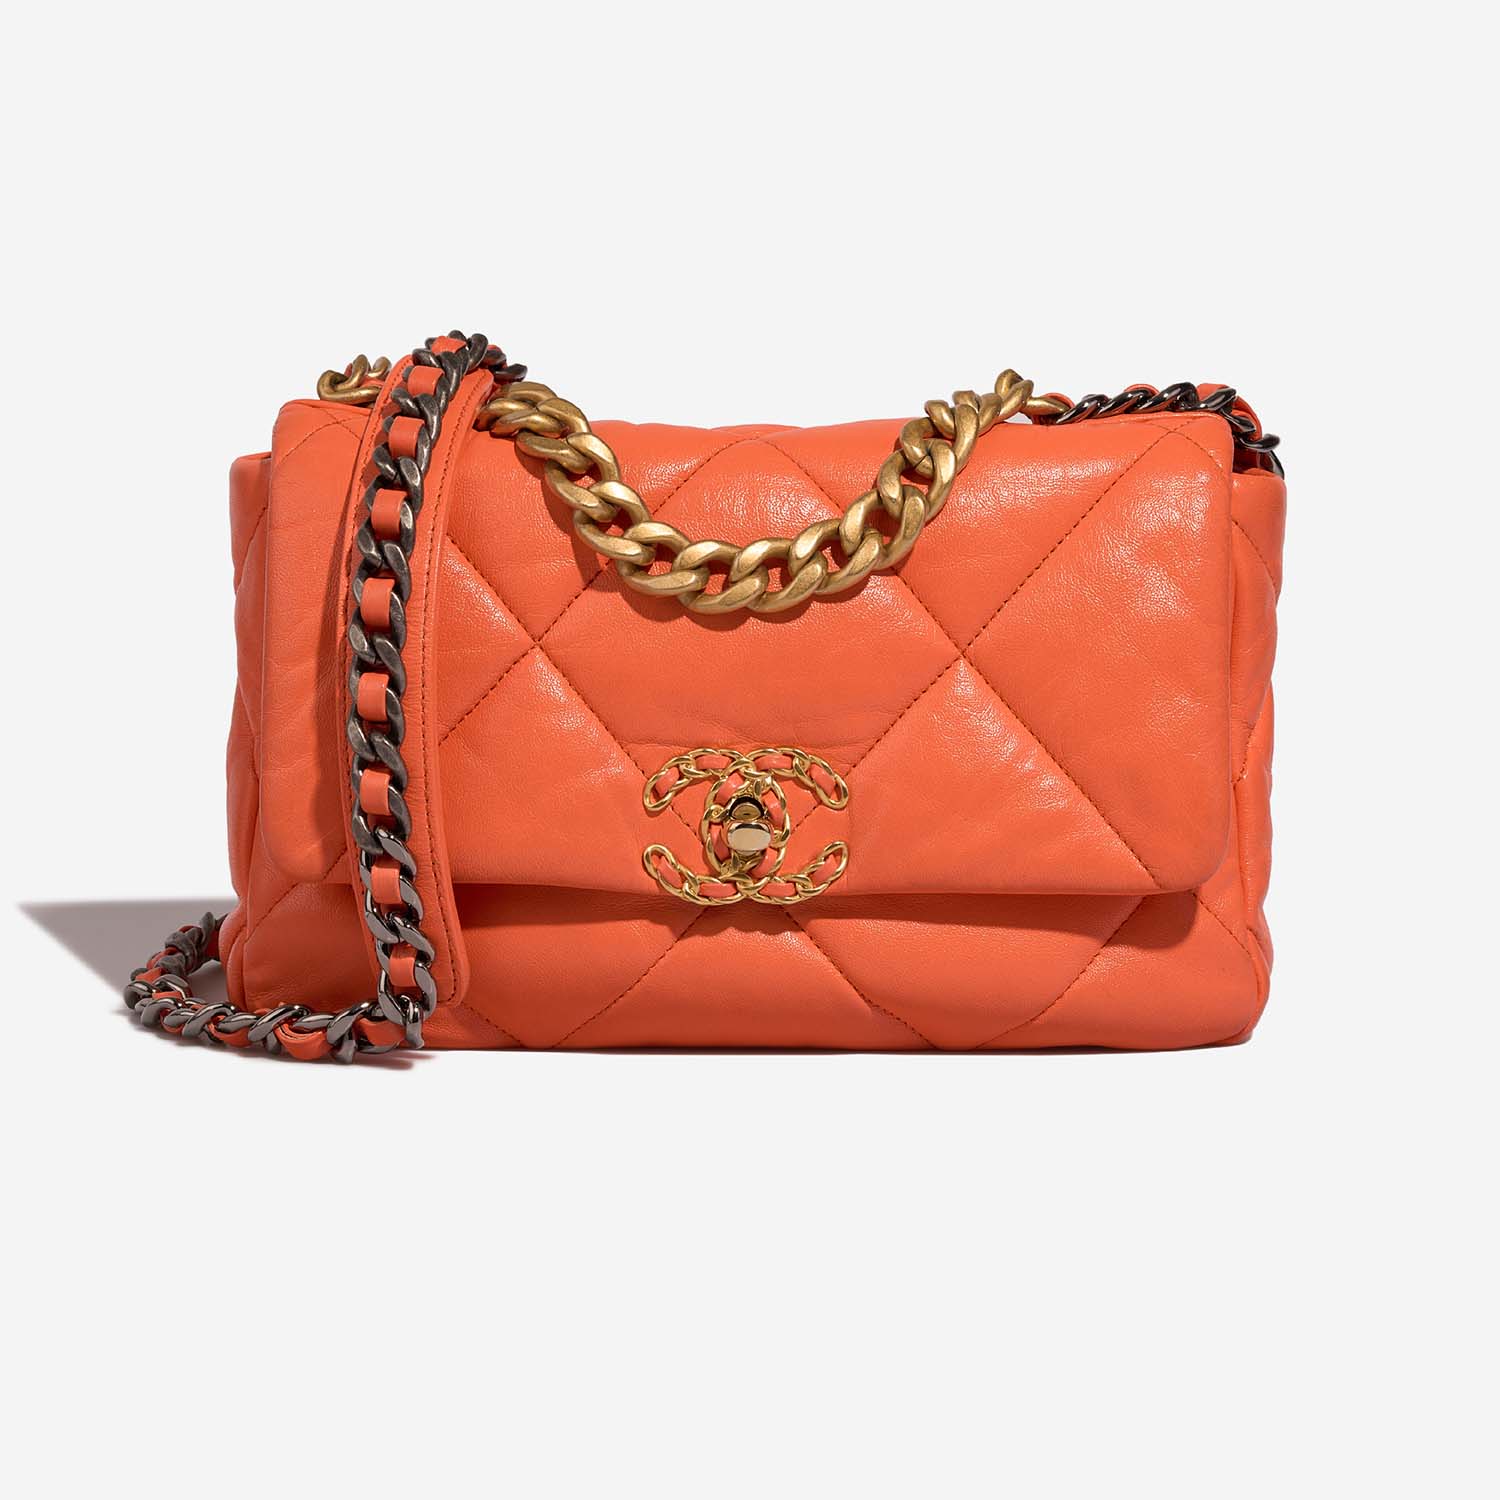 Chanel 19 FlapBag Orange Front | Verkaufen Sie Ihre Designer-Tasche auf Saclab.com